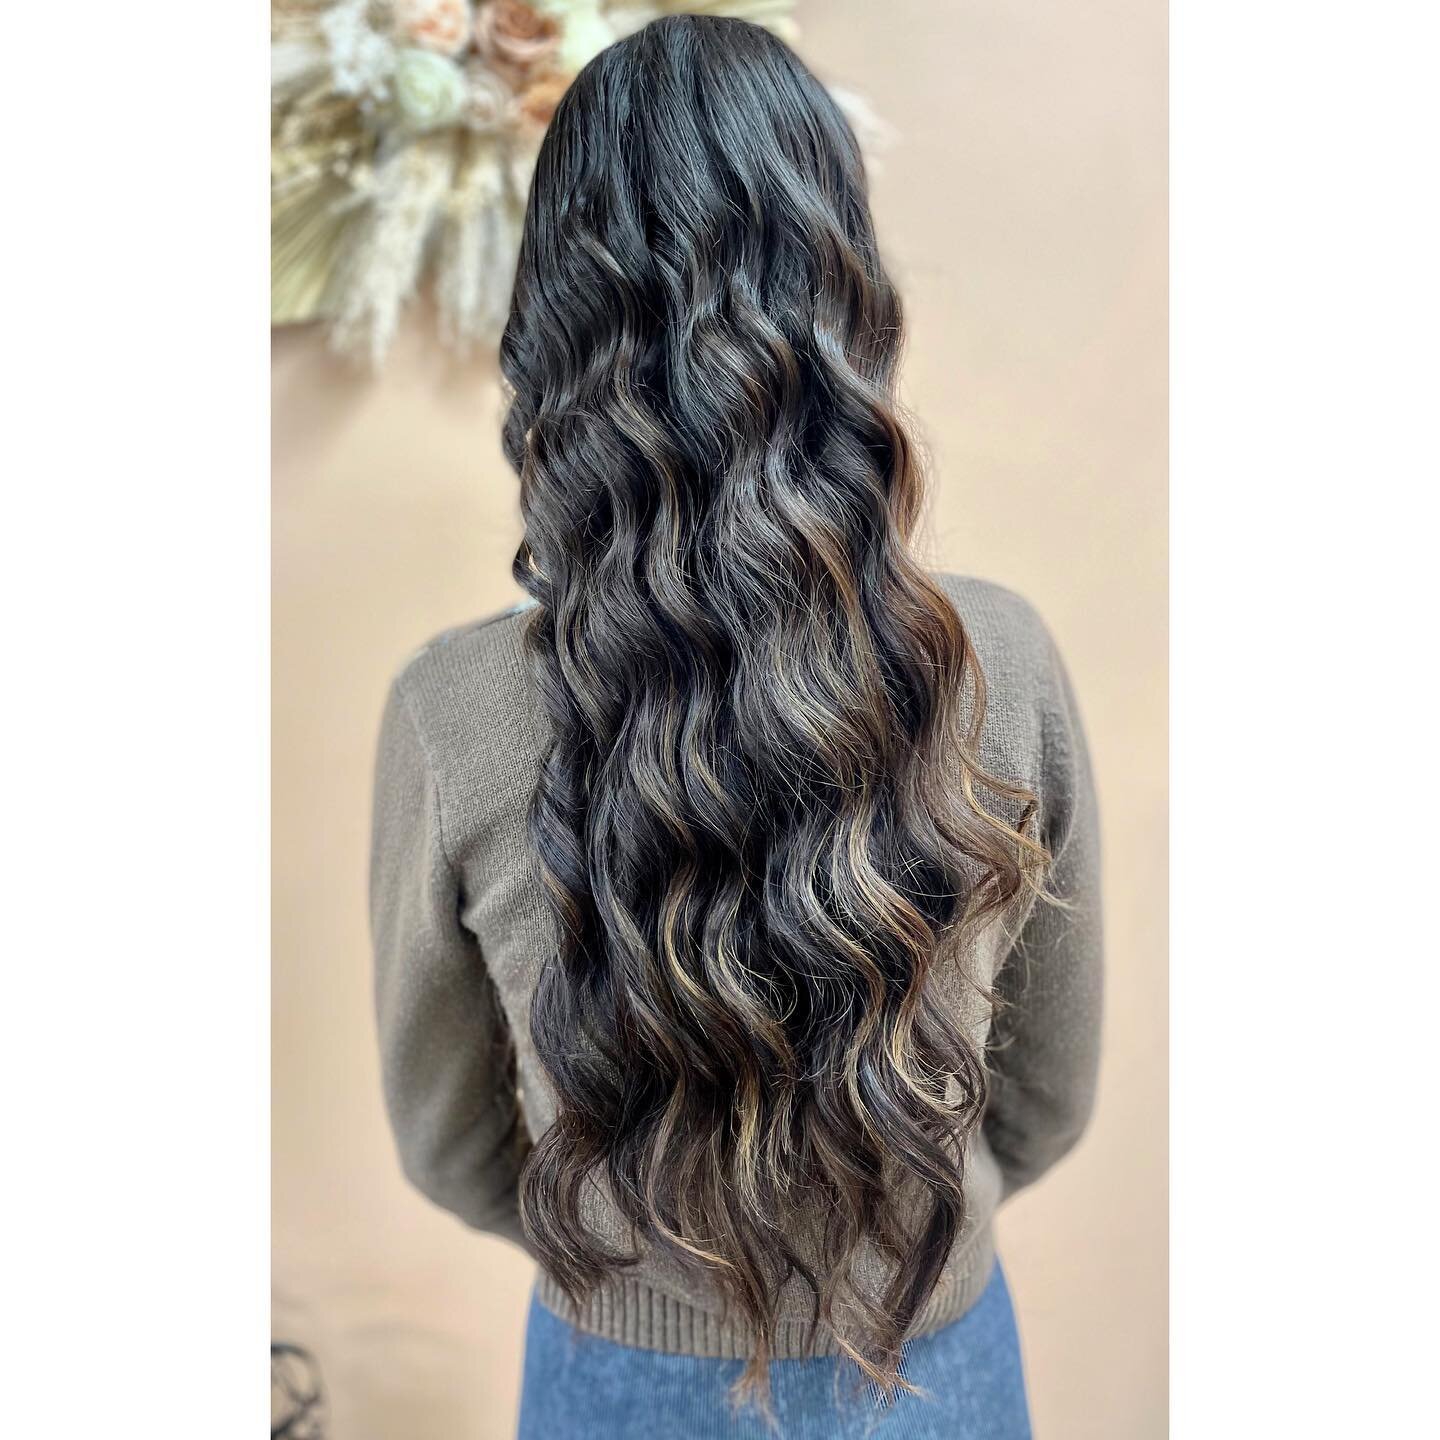 Textured beachy style waves ✨ 
Hair by Olivia @oczbeauty_